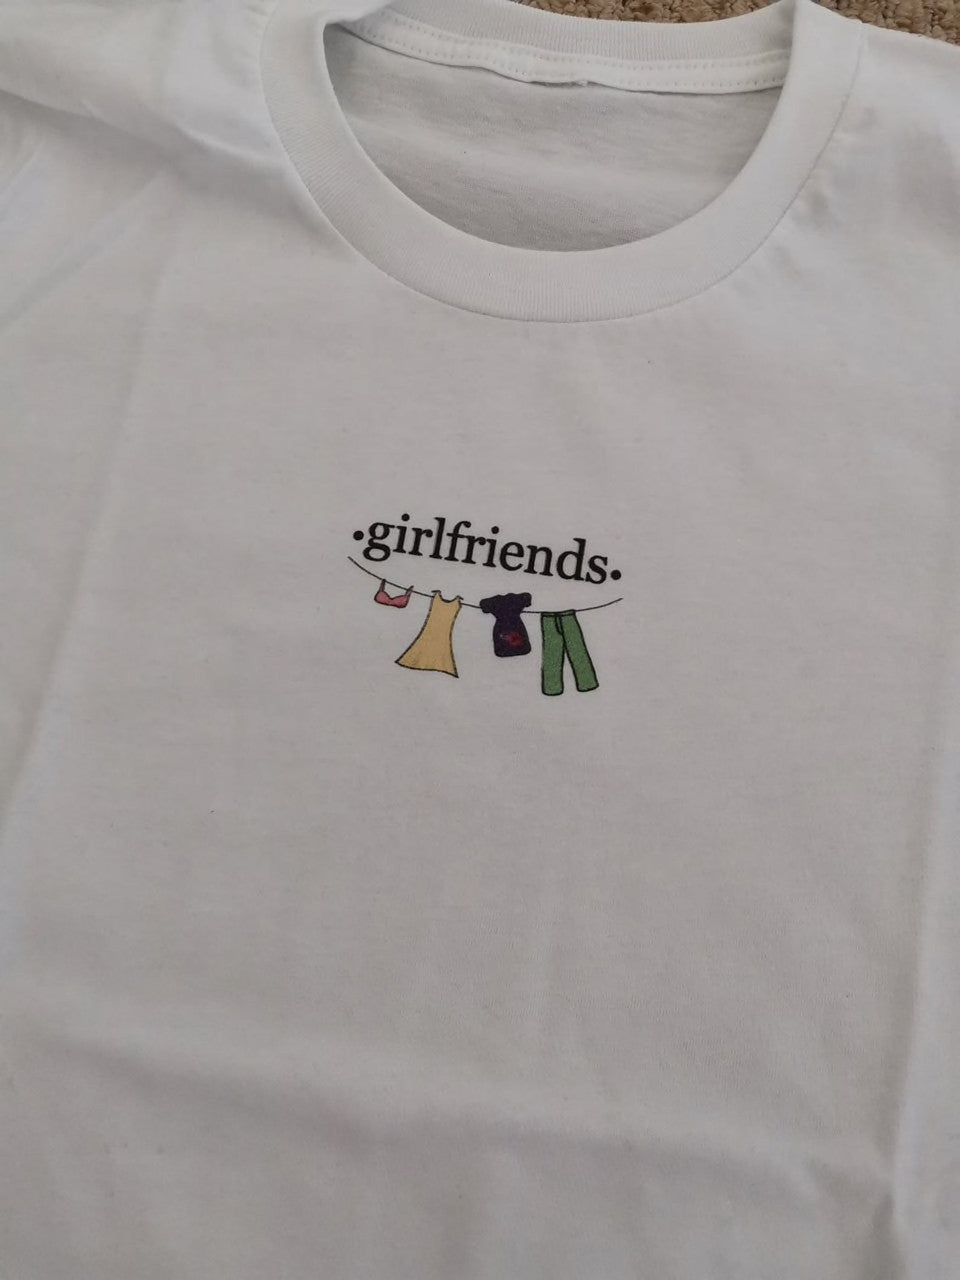 Monica Geller KiSS T-Shirt - Girlfriends - Friends Inspired Replica Season 5 Courtney Xo